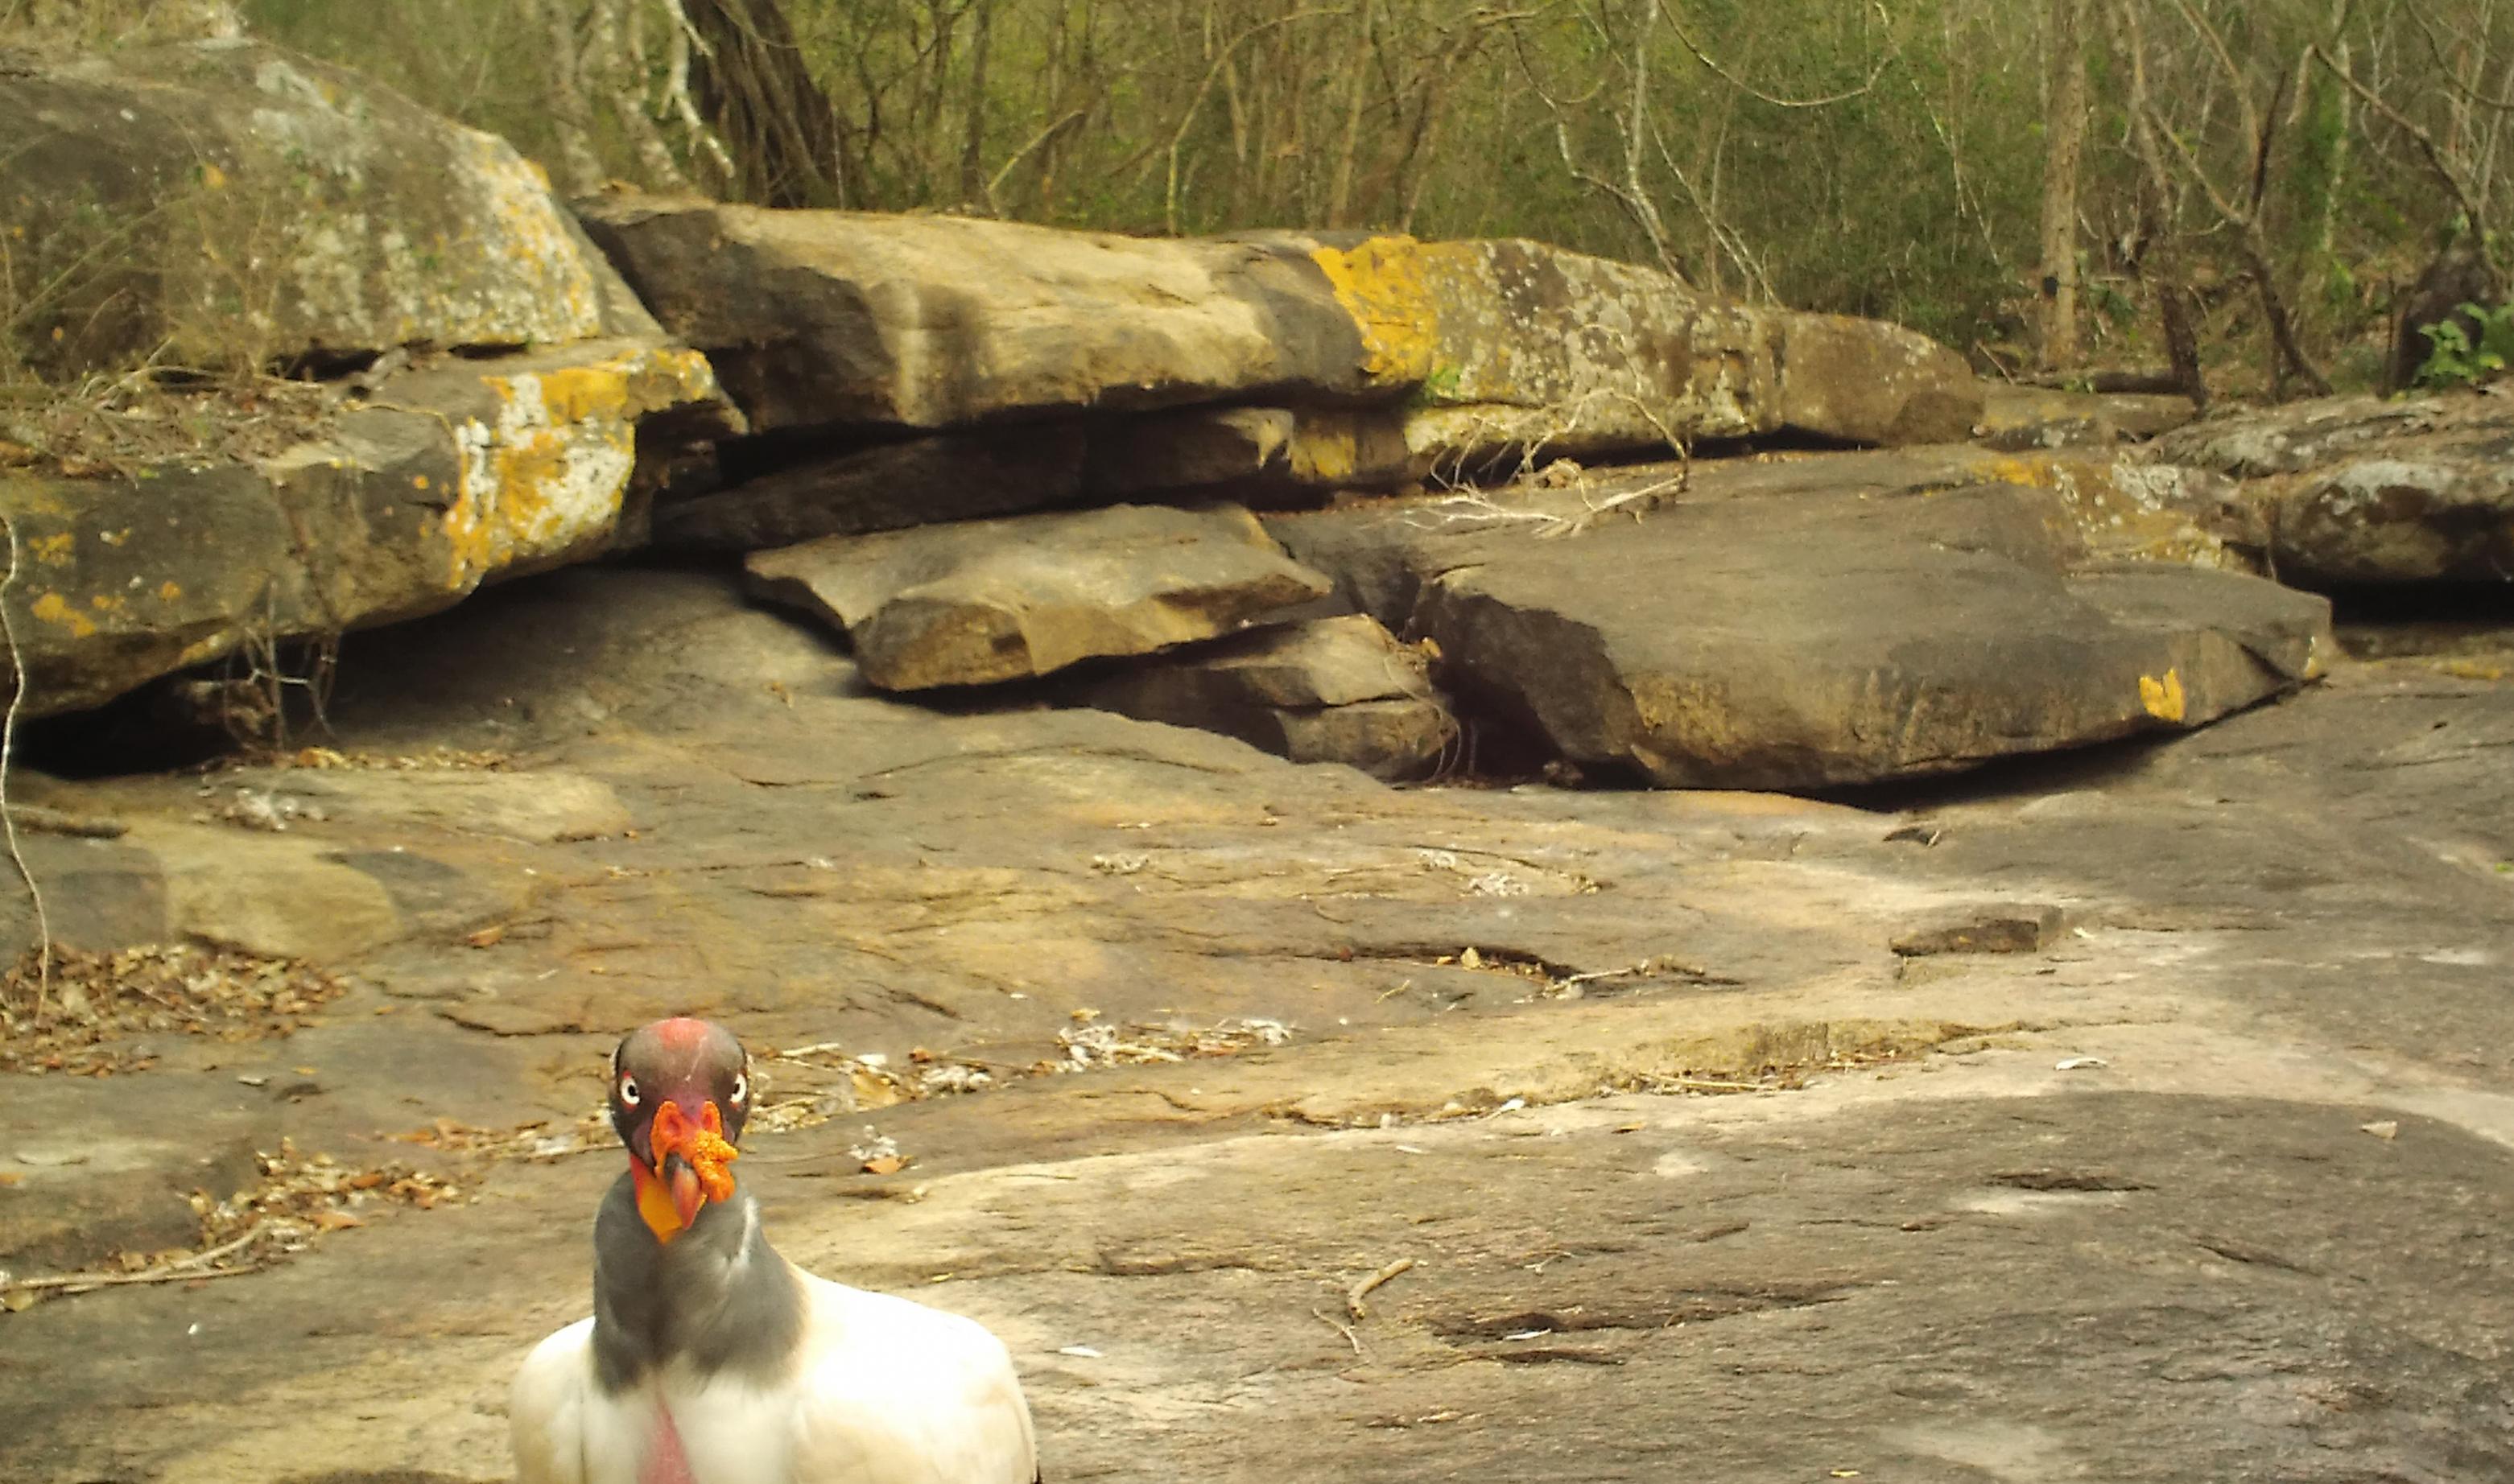 Ein Königsgeier, ein Vogel mit weißem Rumpf, grauem Hals und Kopf, einem orangen Fleck auf dem Kopf und orange farbenem Schnabel steht auf einem Felssplateau vor Felsblöcken und blickt an linken untern Bildrand direkt zum Betrachter.